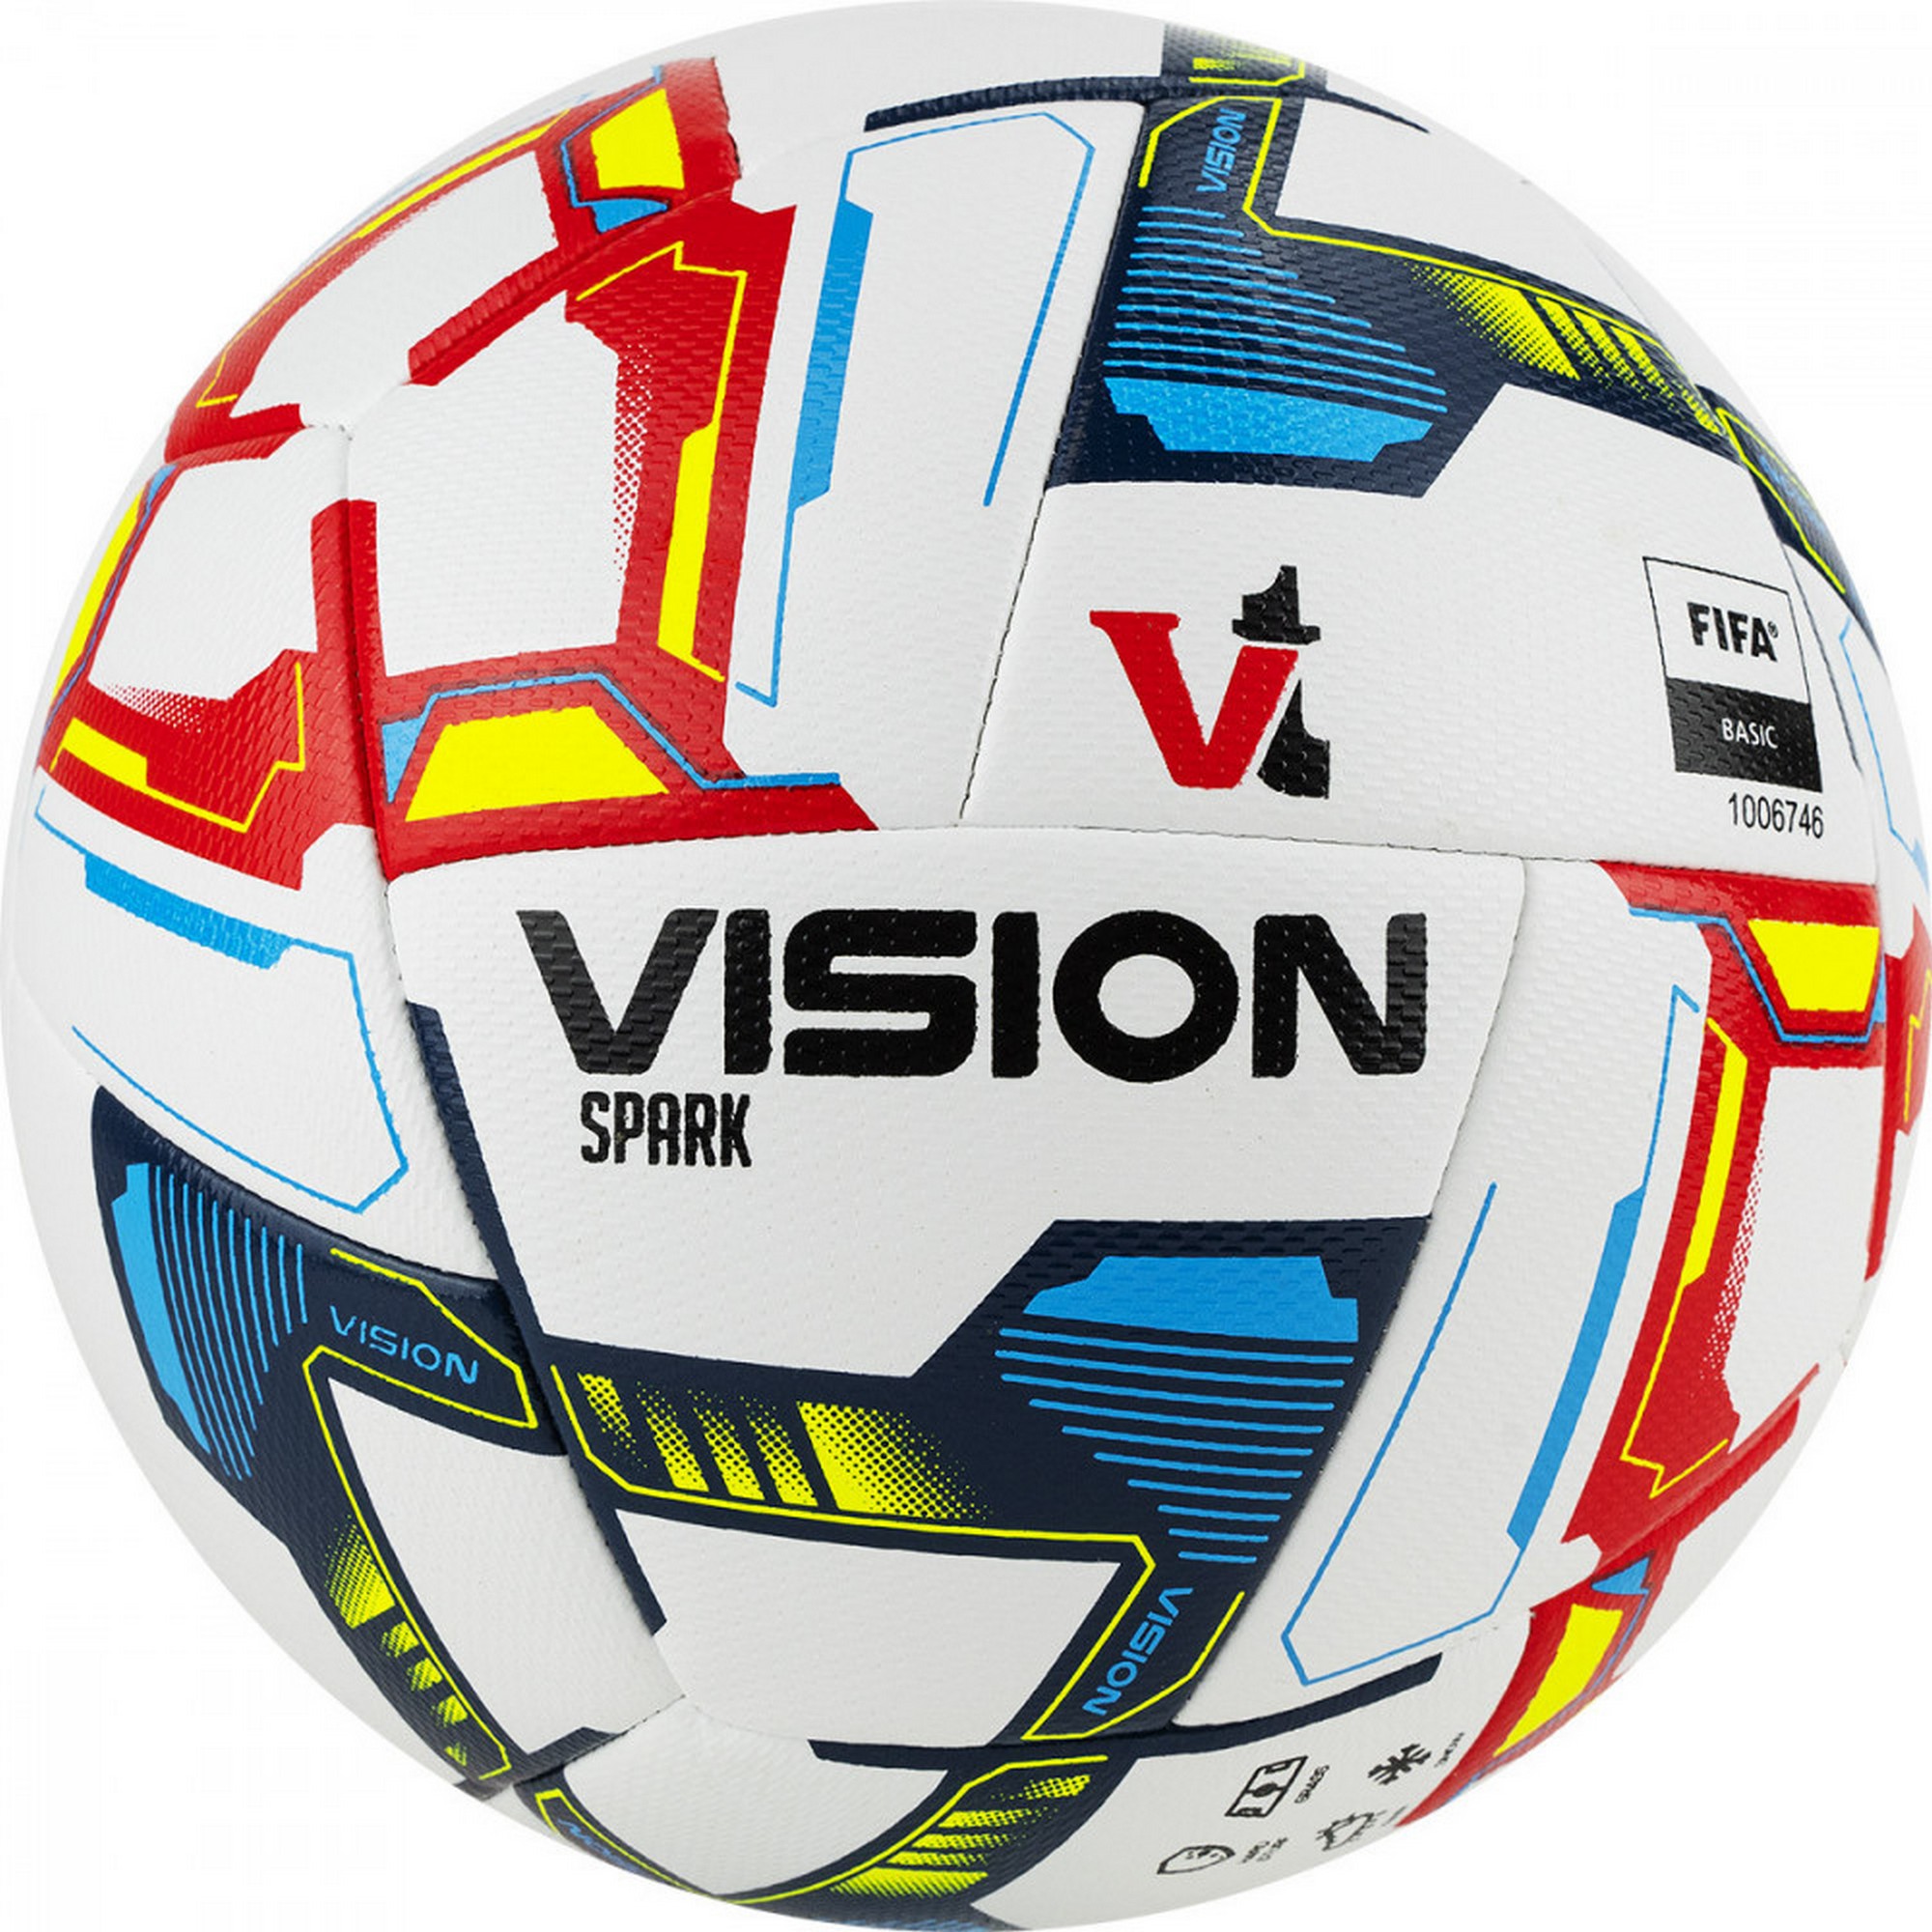   Torres Vision Spark, FIFA Basi FV321045 .5